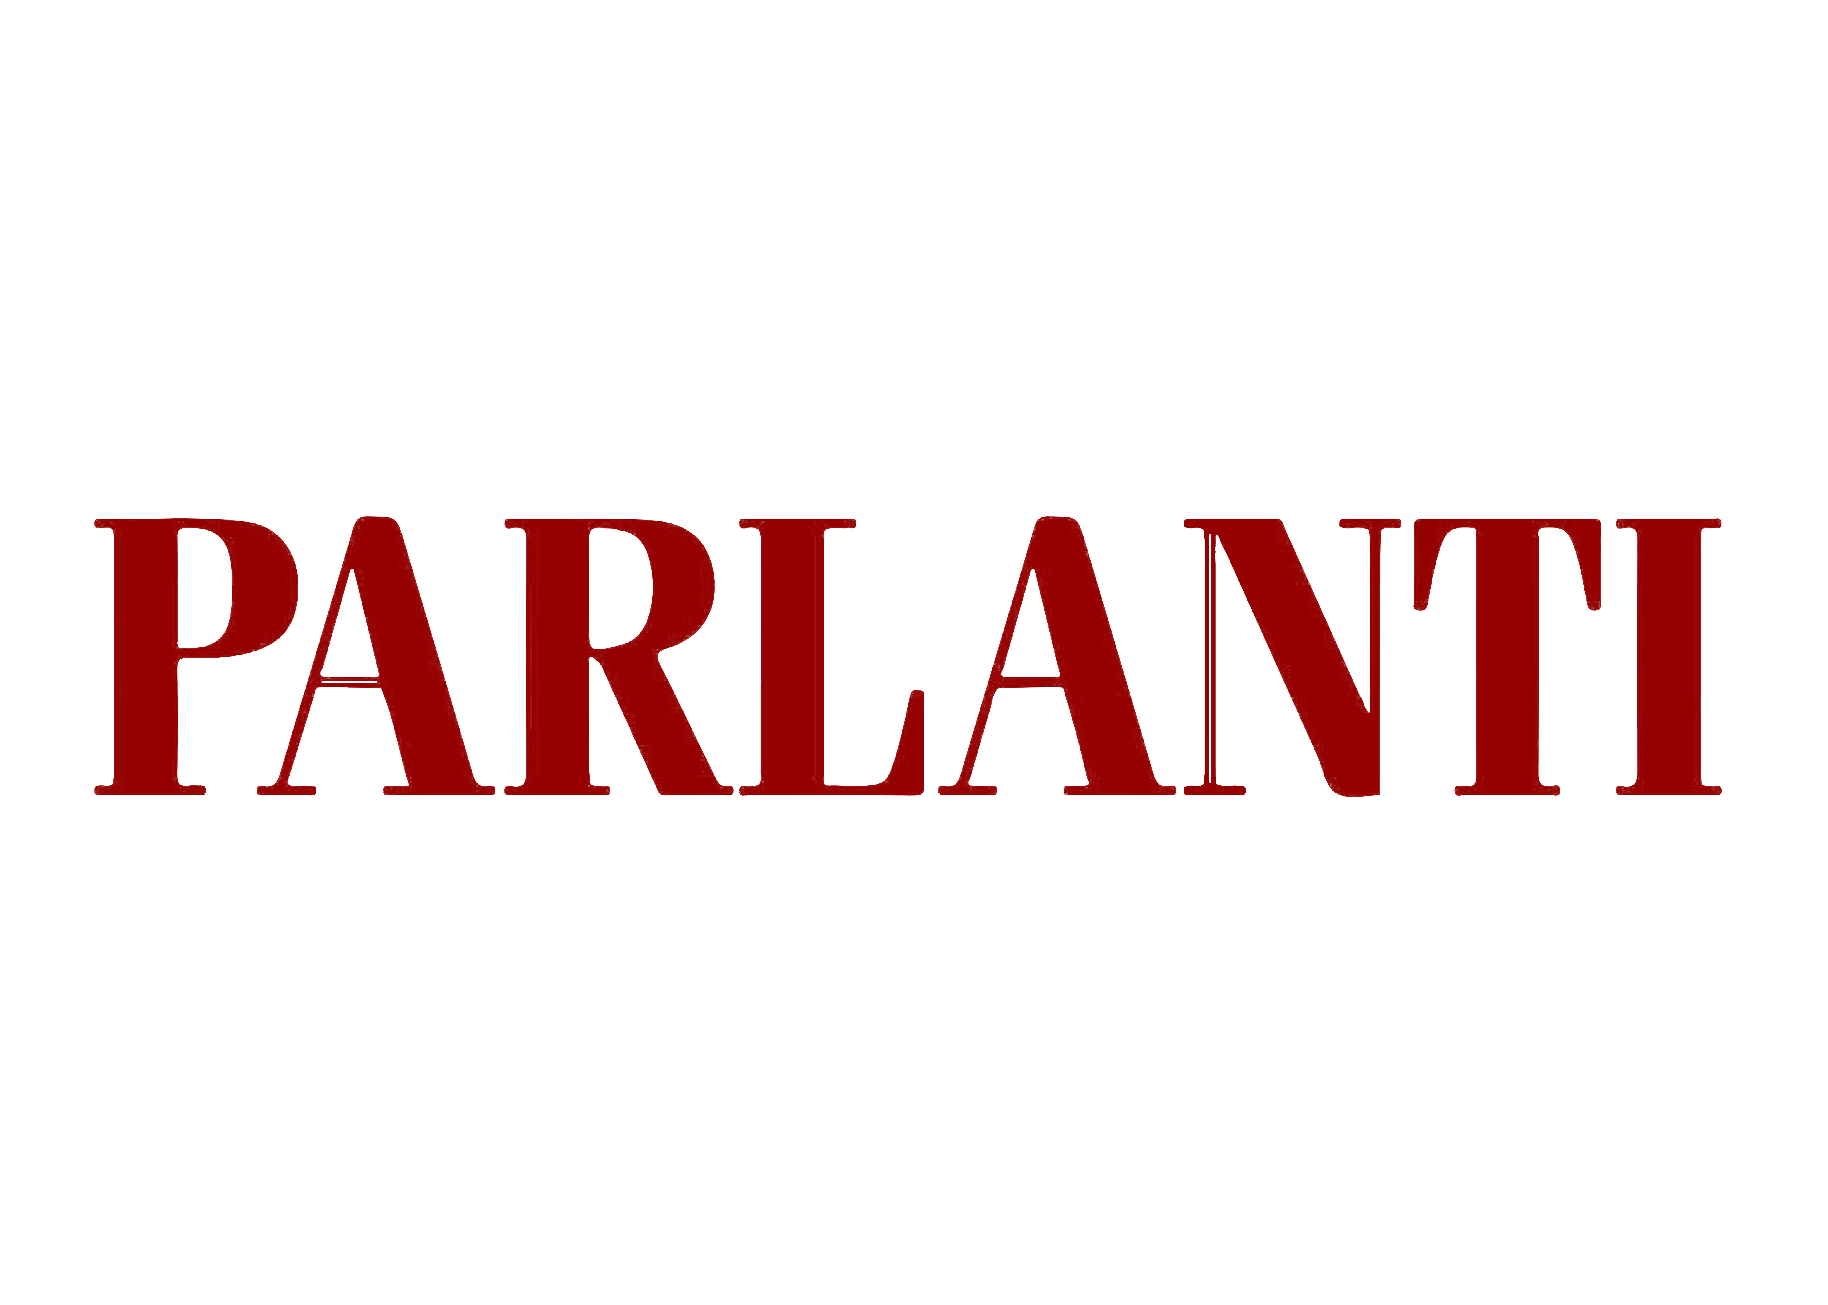 Parlanti.png